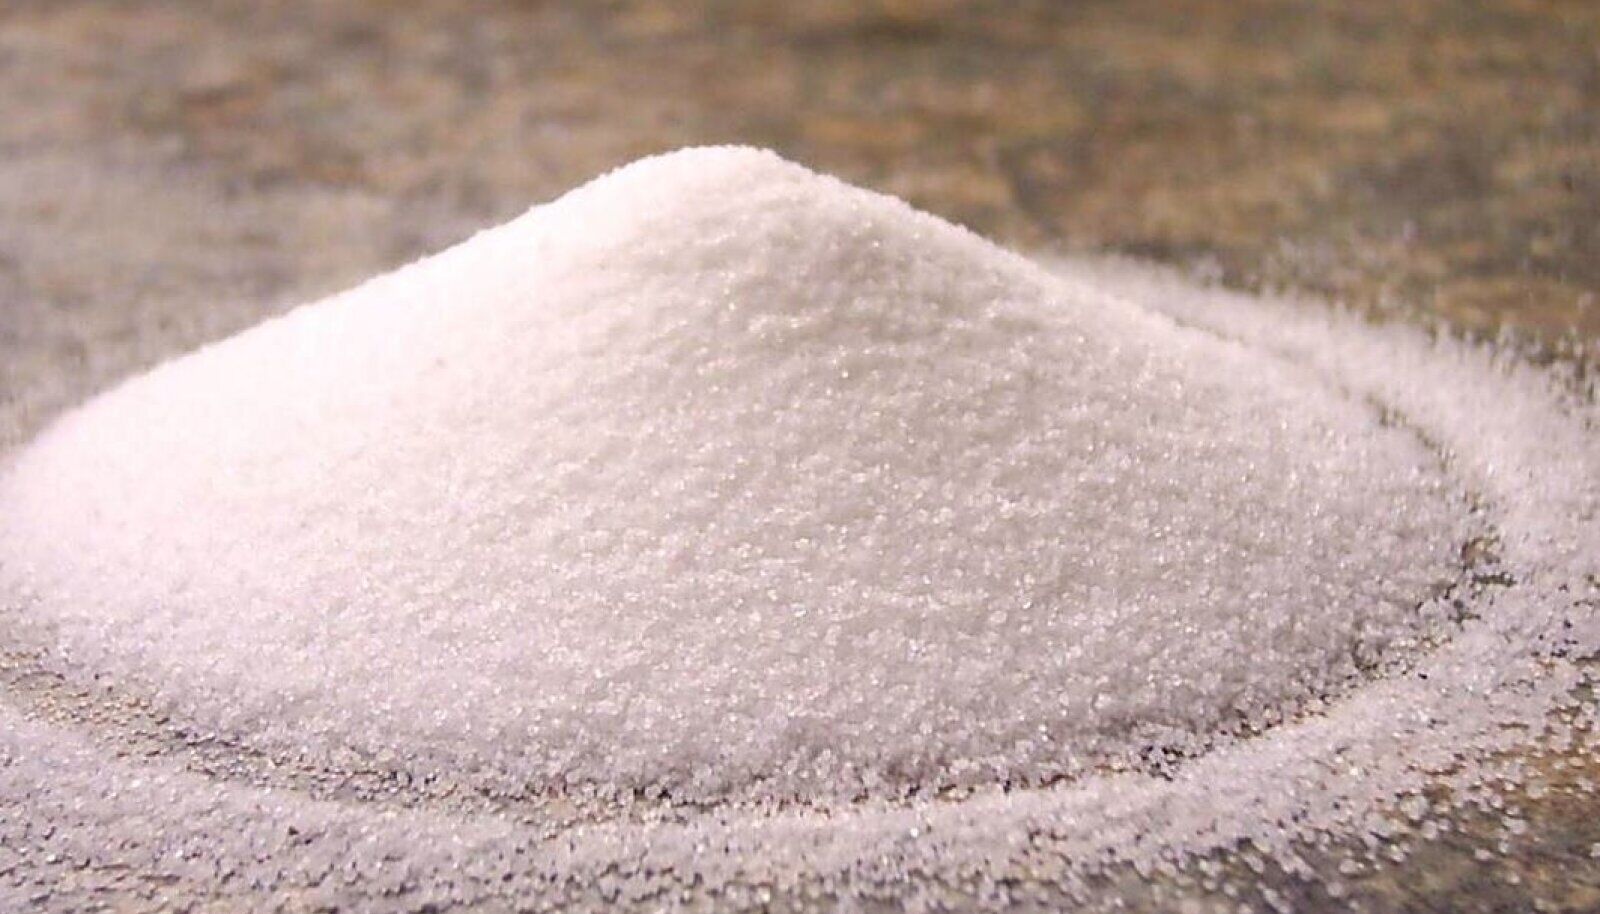 Соль поваренная пищевая каменная молотая высшего сорта помол №1 по ГОСТ Р 51574-2000 в пачках по 1 кг